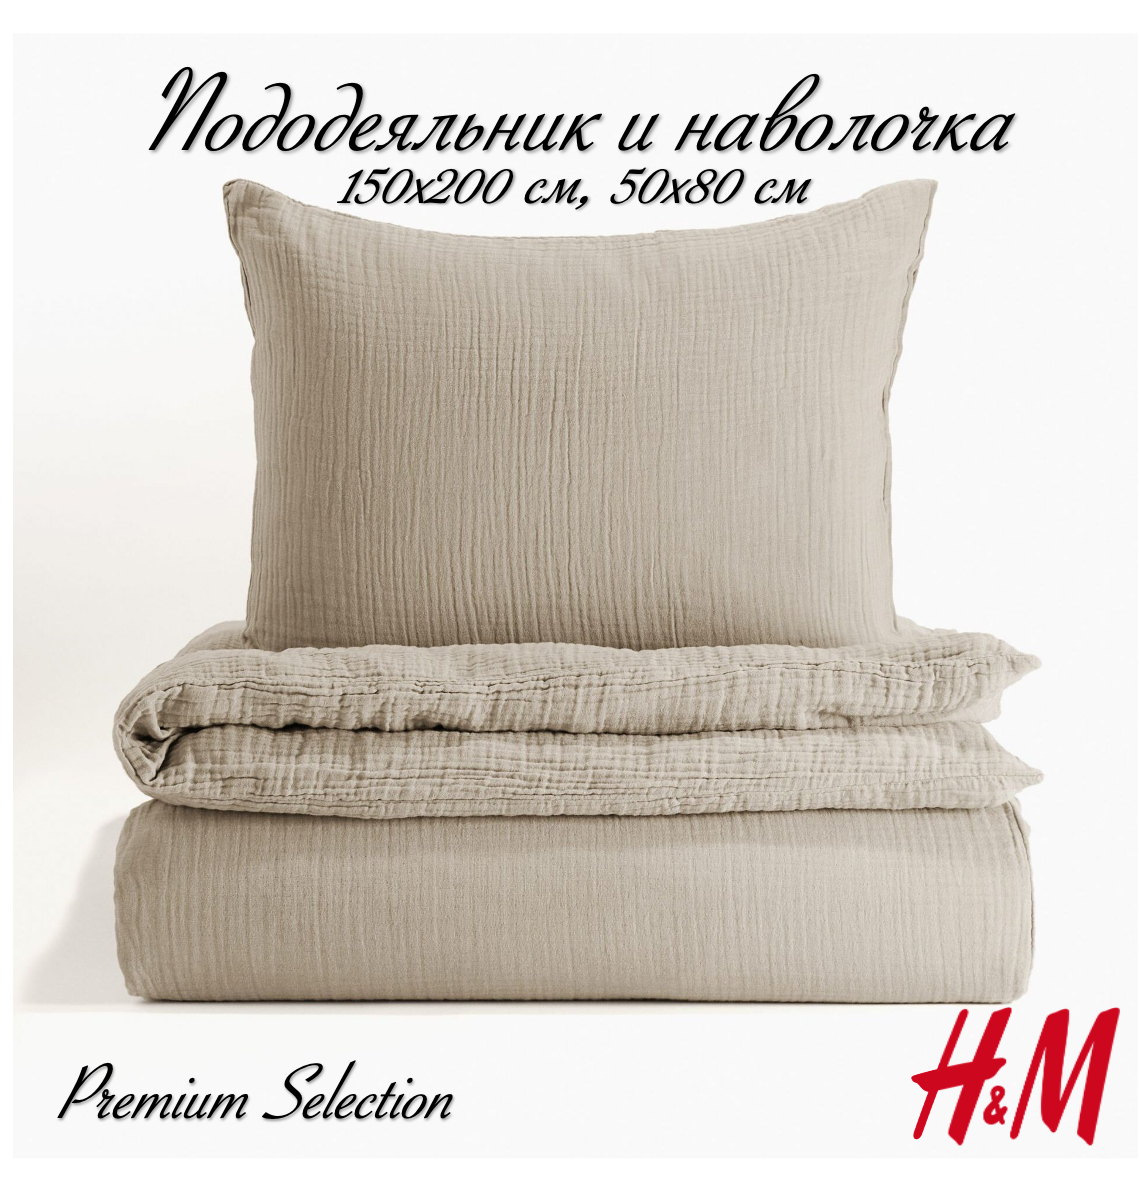 Комплект постельного белья H&M из муслина, пододеяльник и наволочка, 150х200, серый